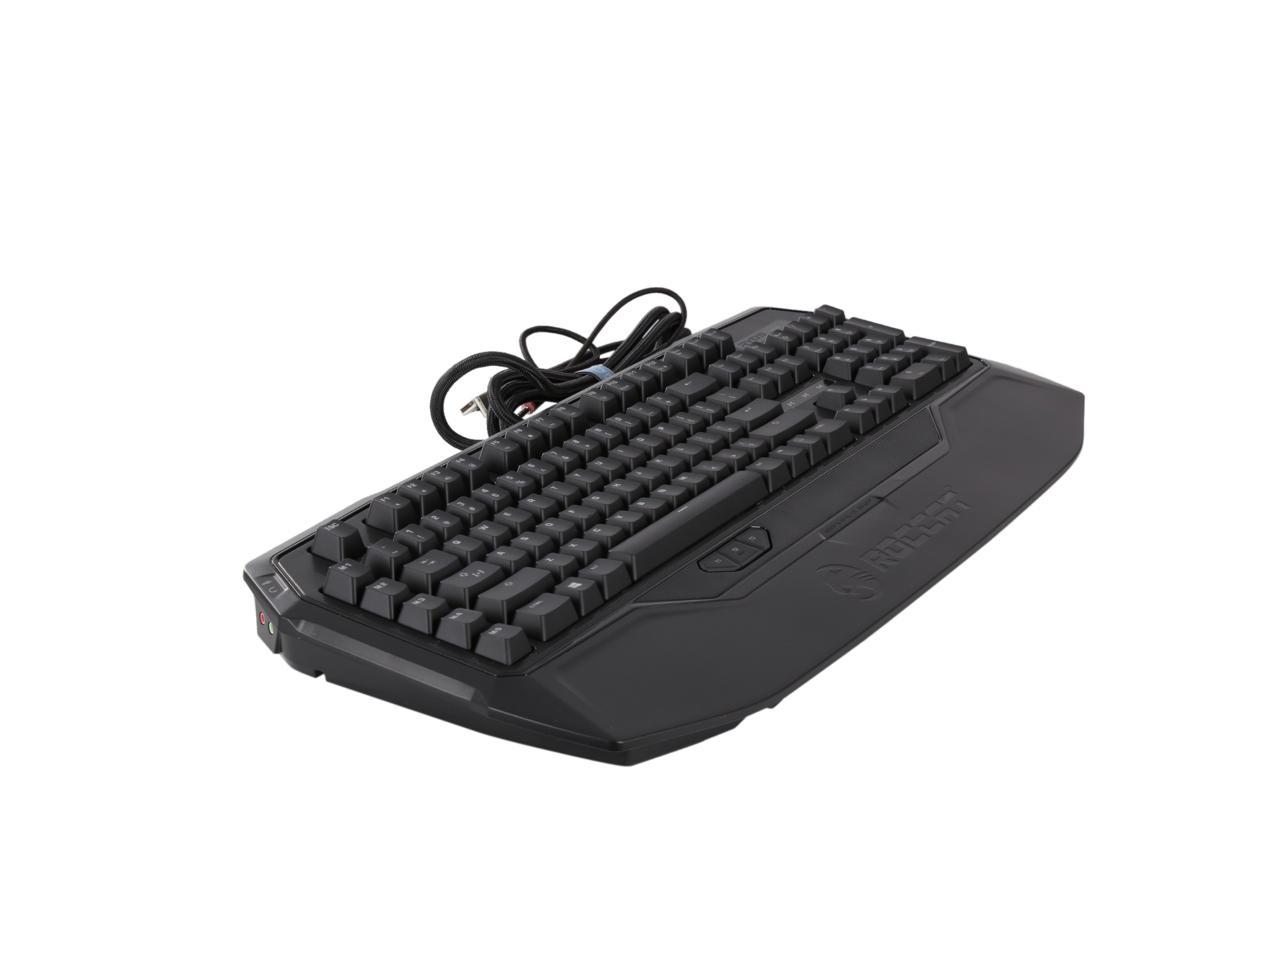 ROCCAT RYOS MK FX - RGB Mechanical Gaming Keyboard With Per-Key 